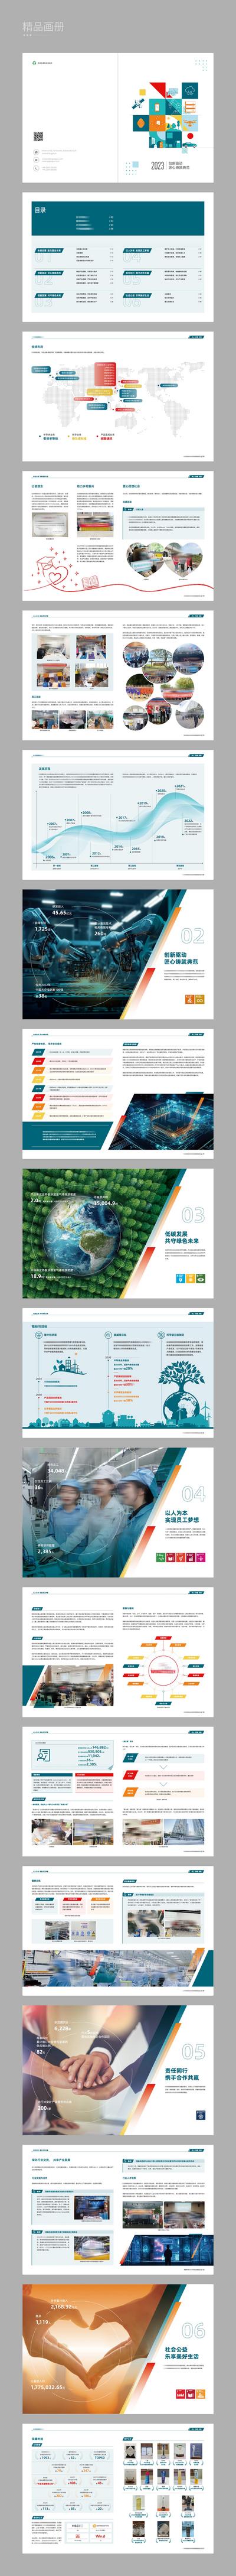 南门网 画册 宣传册 科技 创新 人工智能 数字经济 新能源 低碳环保 未来 电力 节能 公司介绍 企业荣誉 数据 历程